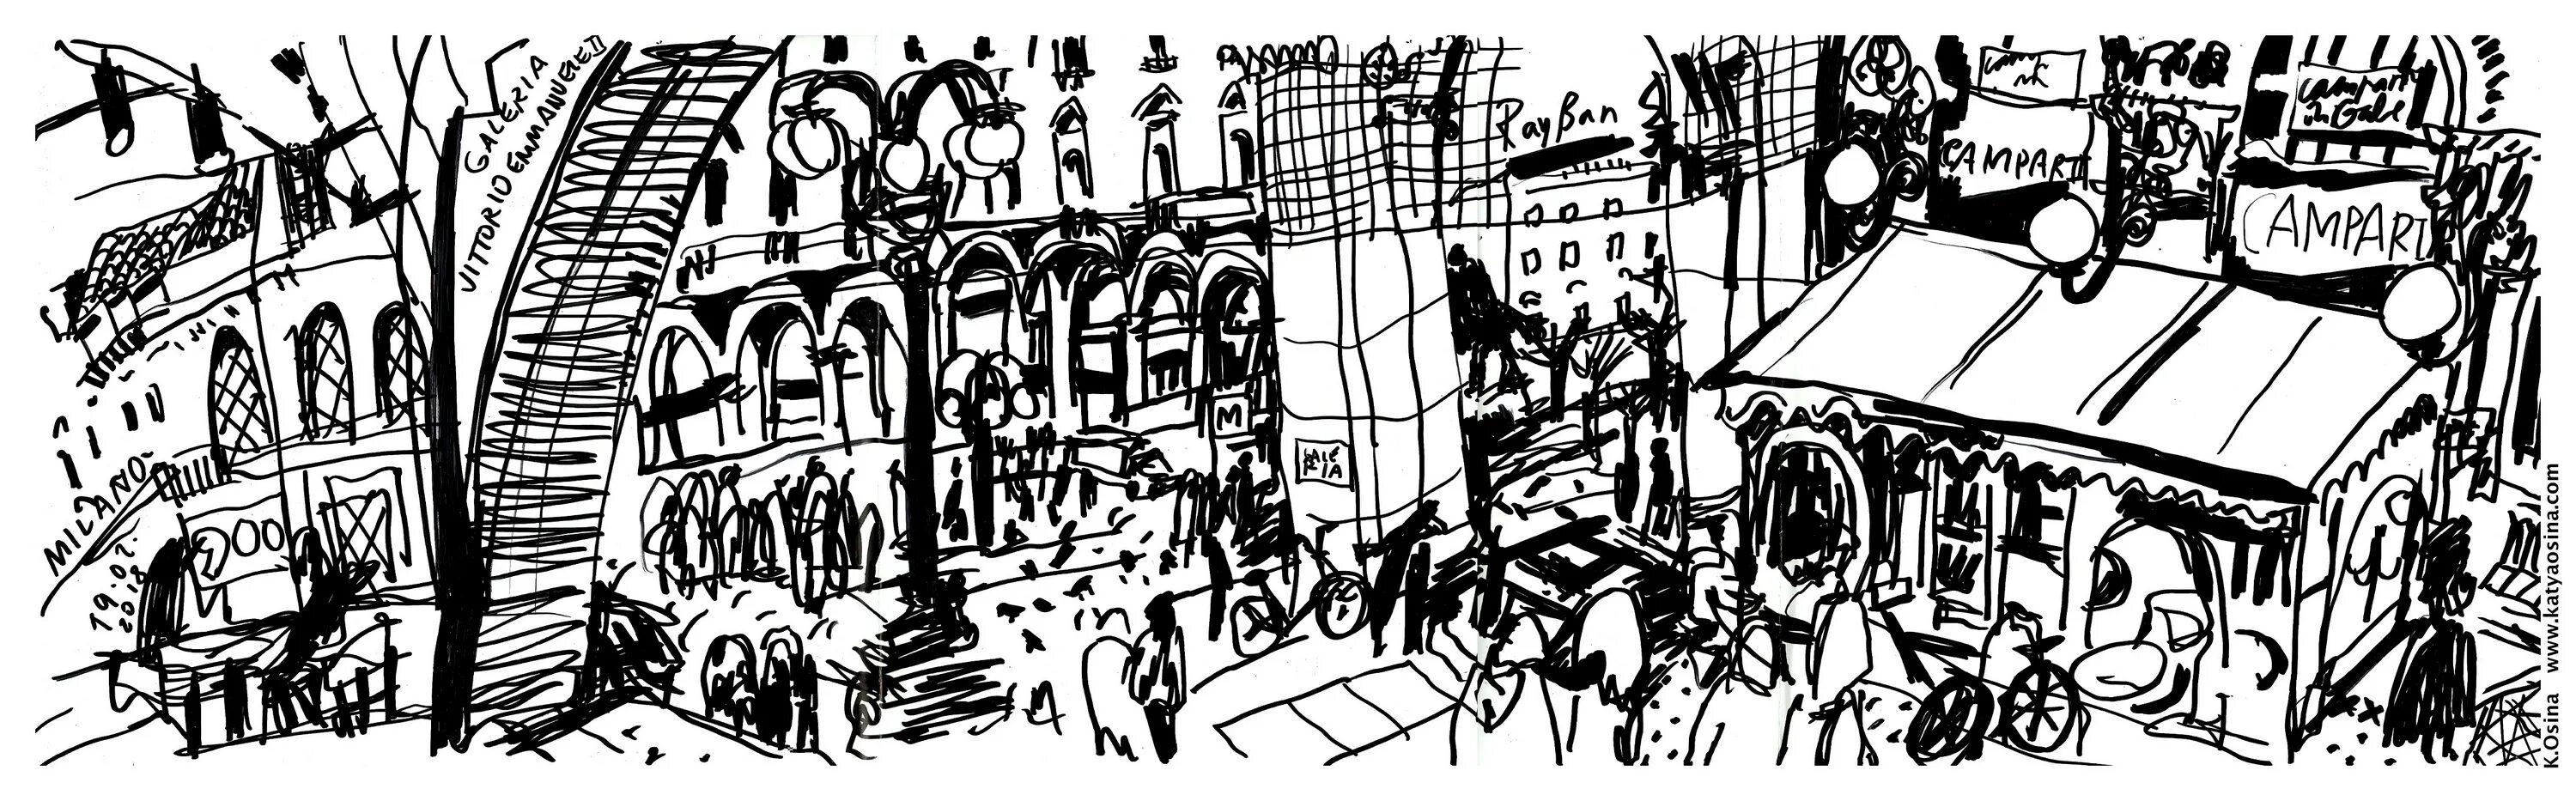 Средневековый город ярмарка арт. Фон из иллюстраций. Улица Рима рисунок. Рисунок годы странствия.